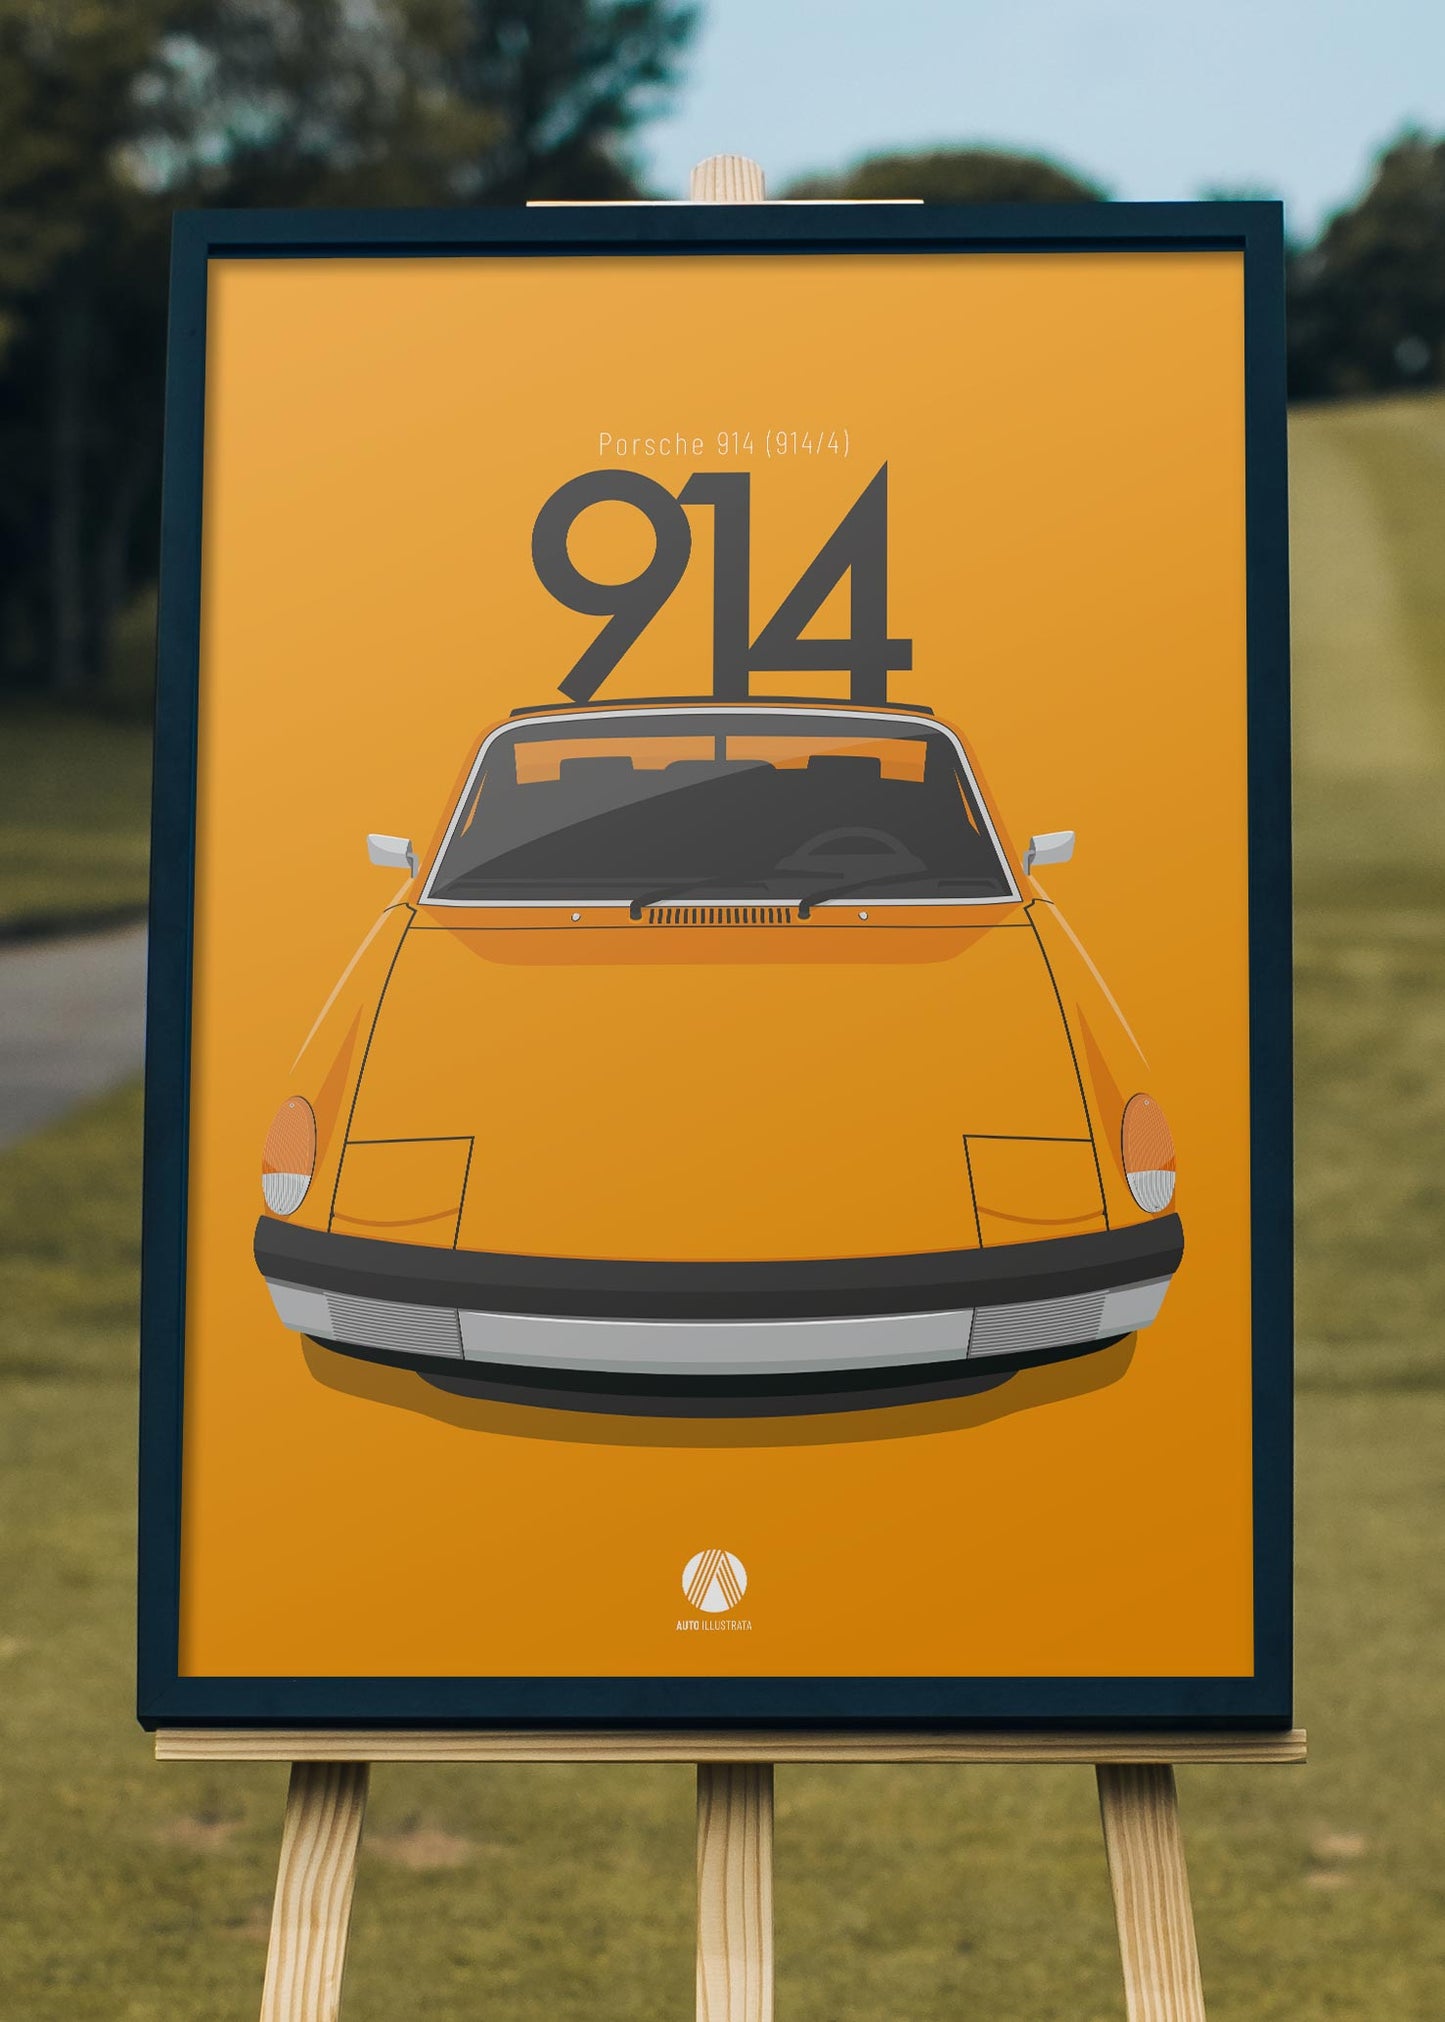 1970 Porsche 914 Signal Orange - poster print